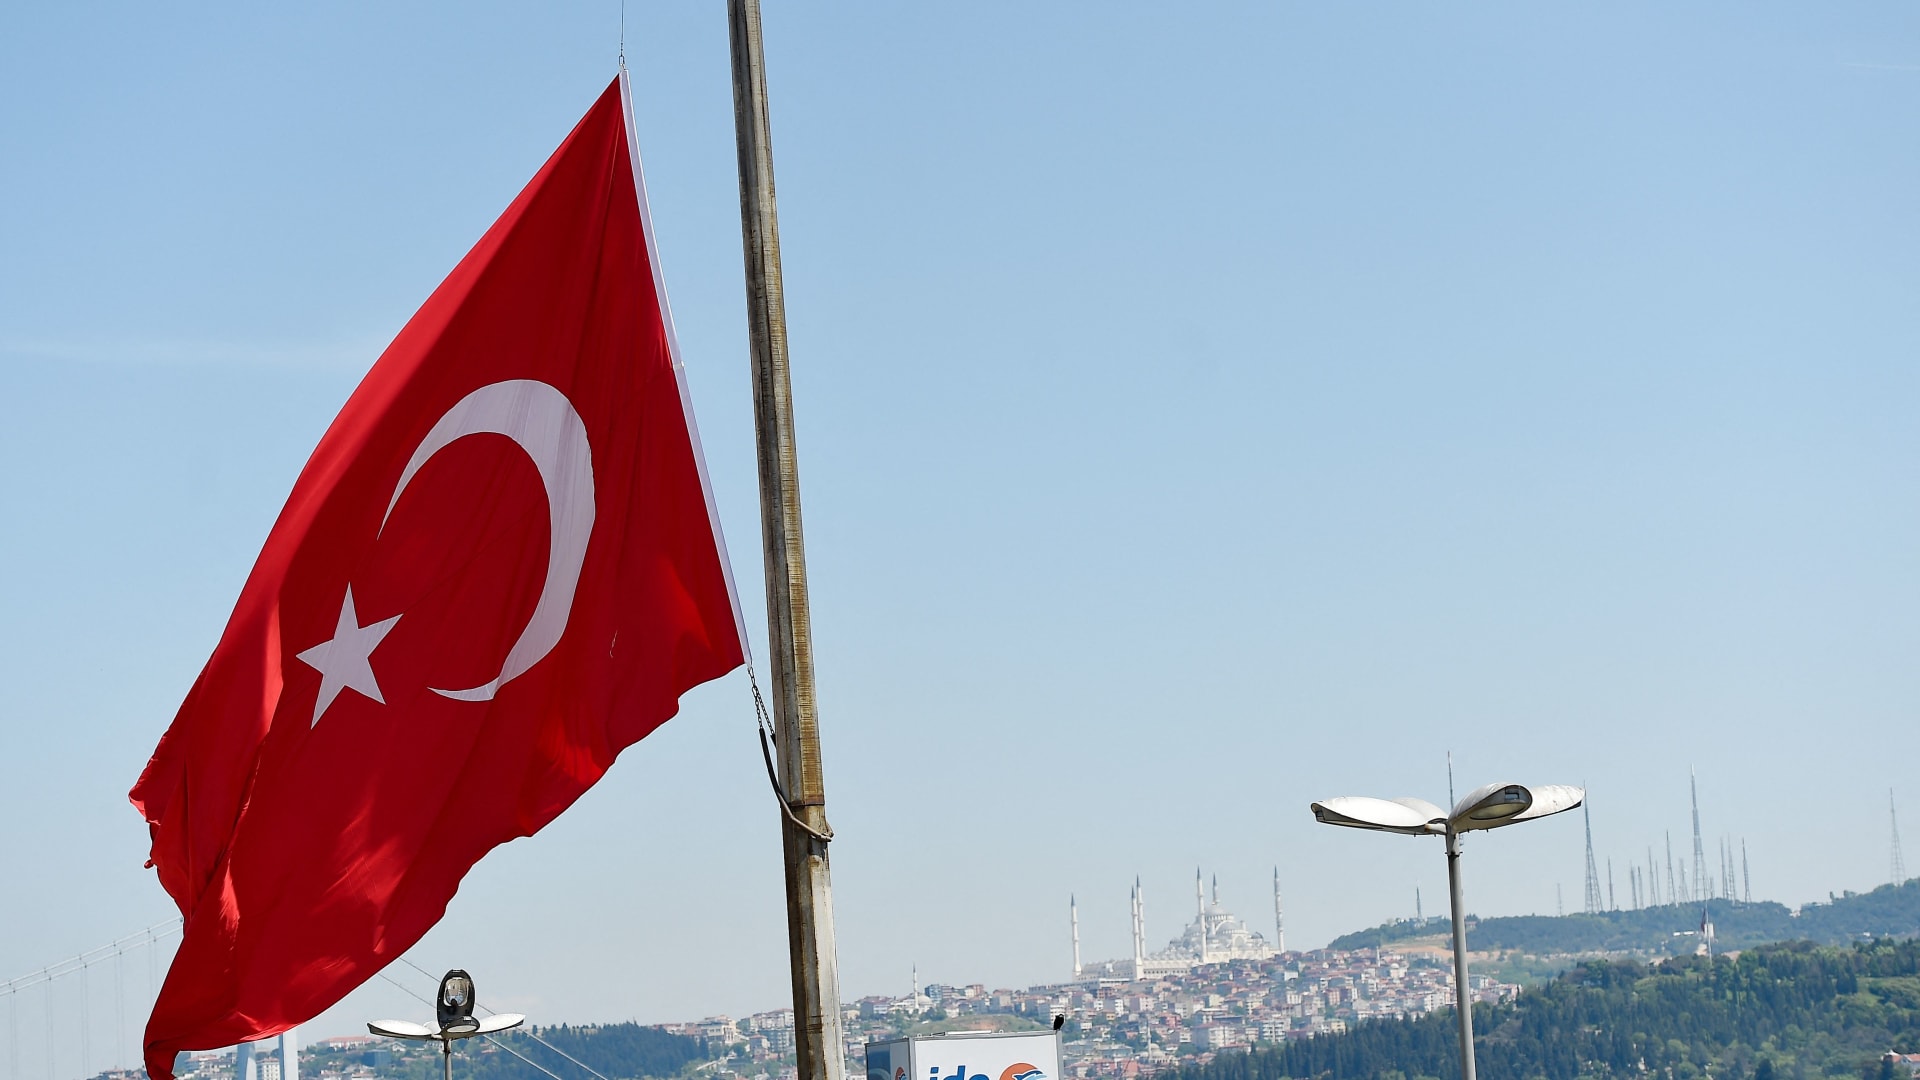 خارجية تركيا تندد باعتداء استهدف نسخة من المصحف وعلمها في الدنمارك